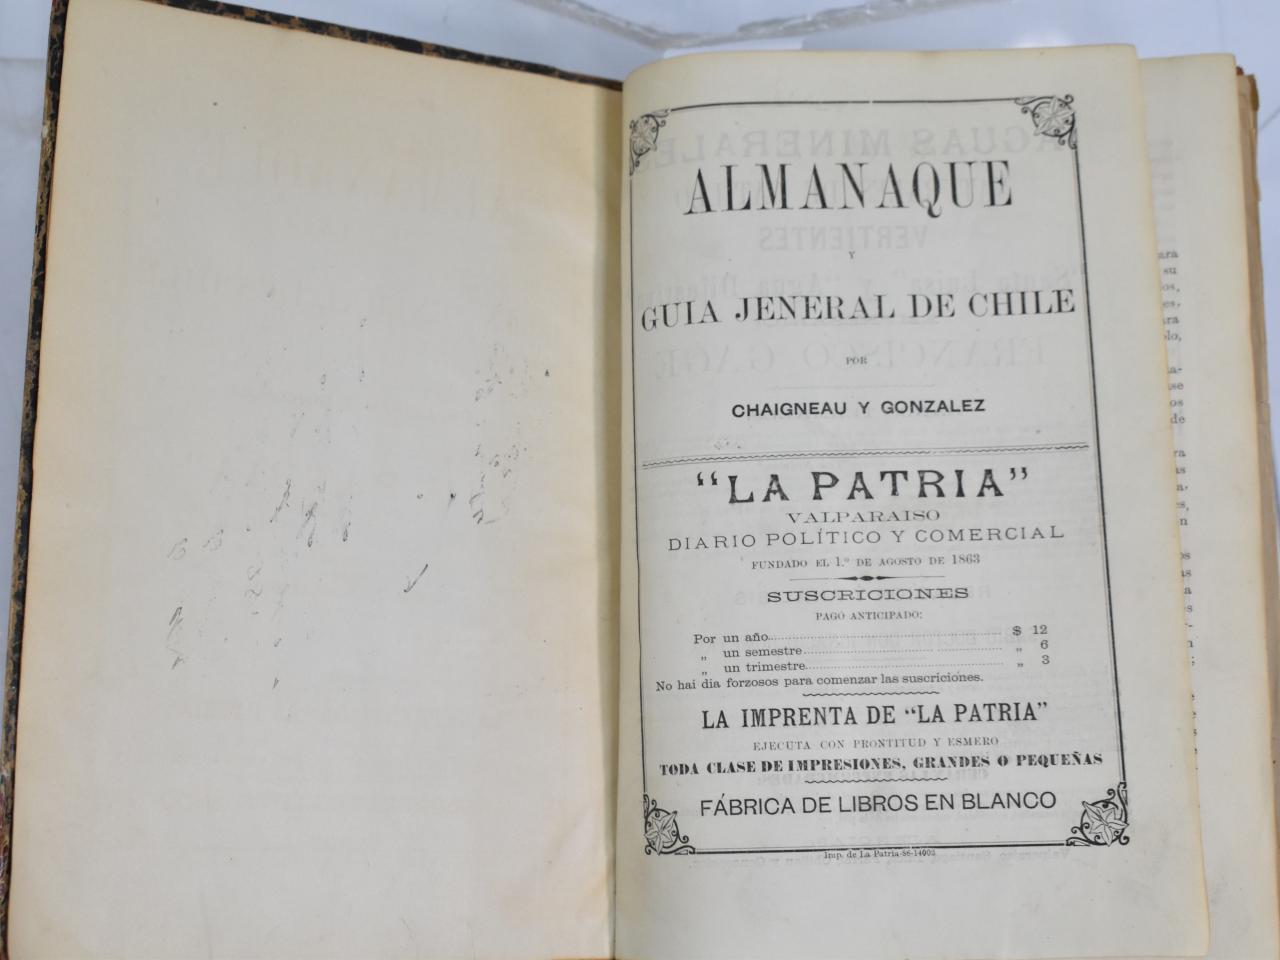 Almanaque y guia jeneral de Chile. Chaigneau y Gonzalez (1887)